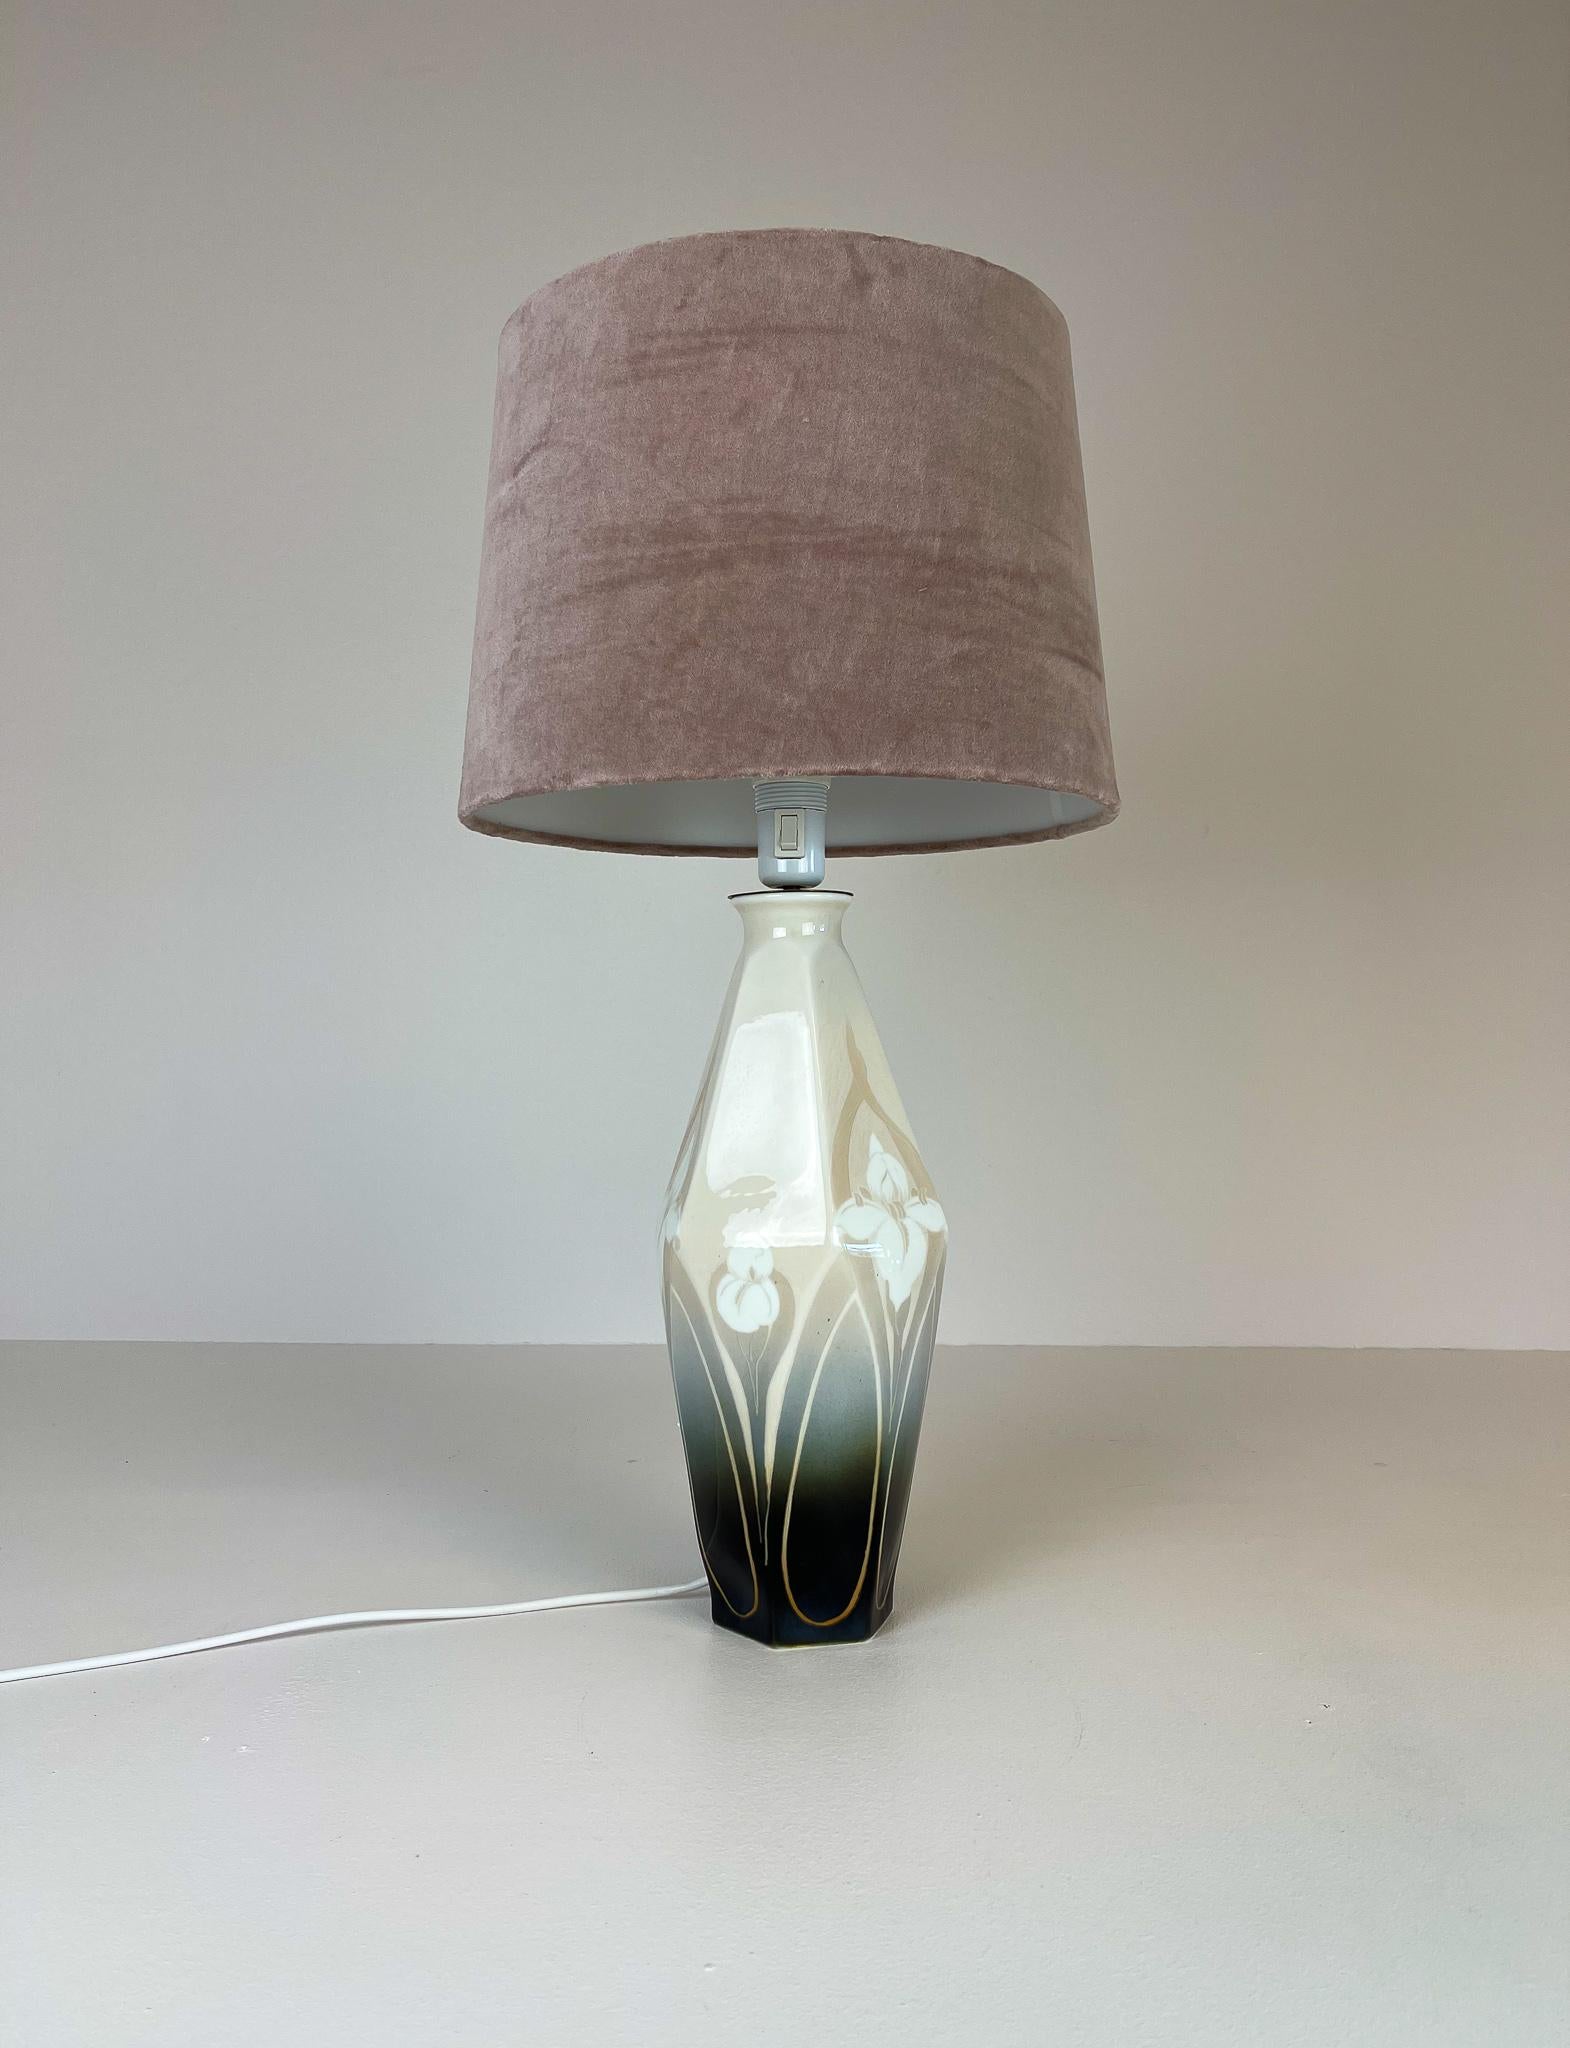 Cette lampe de table rare a été fabriquée dans les années 1900. Fabriqué à l'usine de Rörstrand et conçu par Astrid Ewerlöf. La lampe a un corps de forme magnifique avec les fleurs typiques de l'Art Nouveau. Nouvelle teinte en velours. 

Bon état,